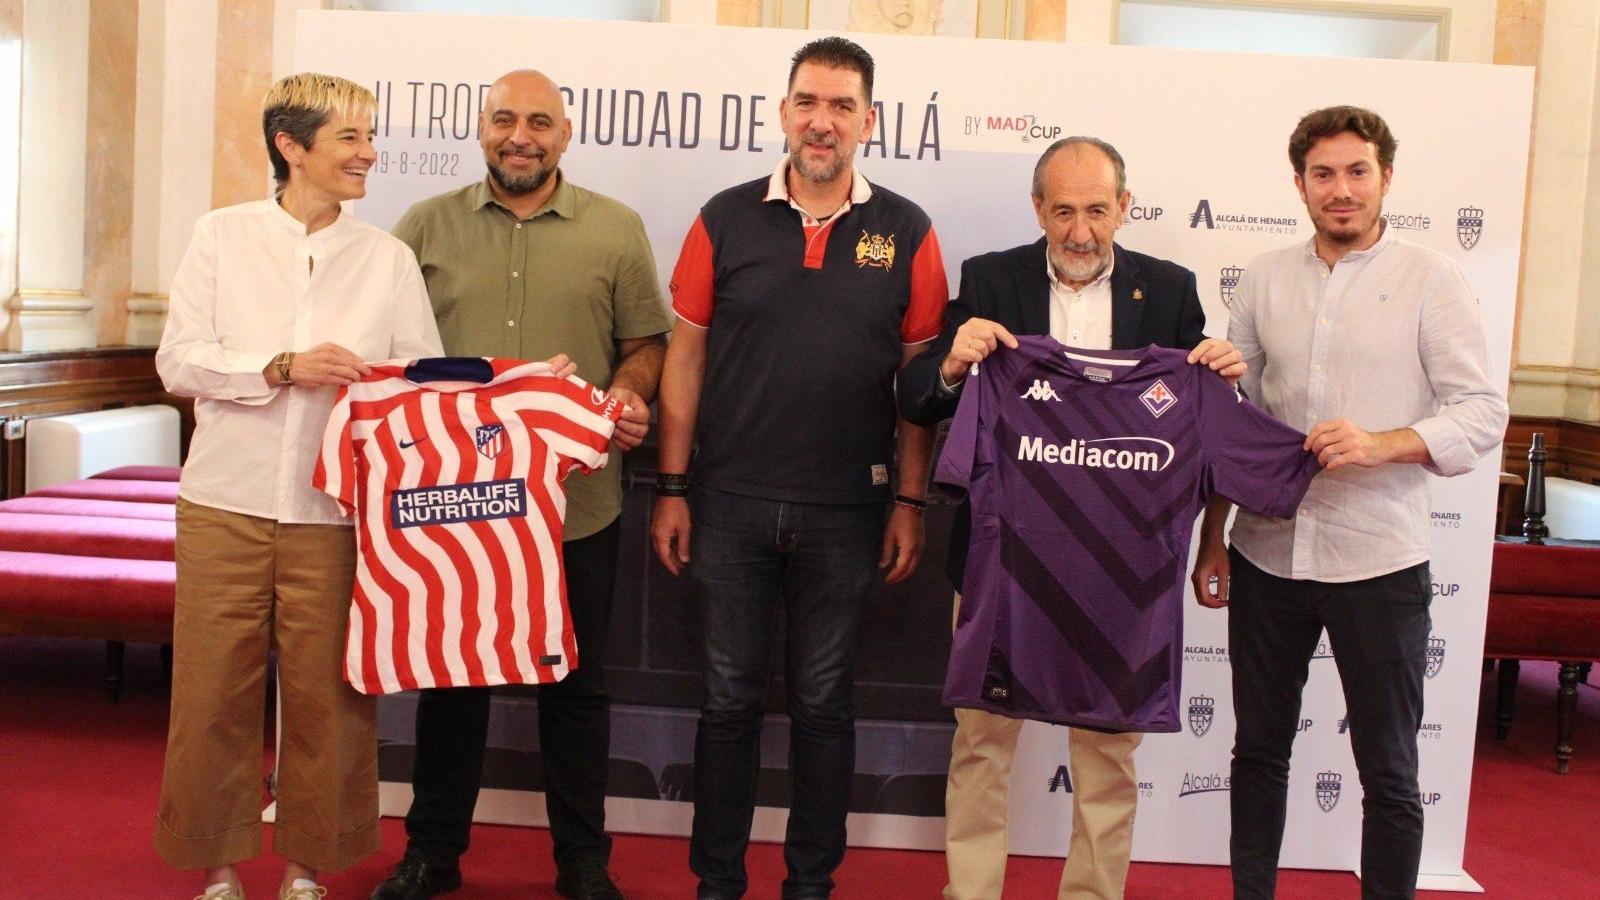 El II Trofeo de Fútbol Femenino de Alcalá enfrentará este viernes al Atlético de Madrid y la ACF Fiorentina